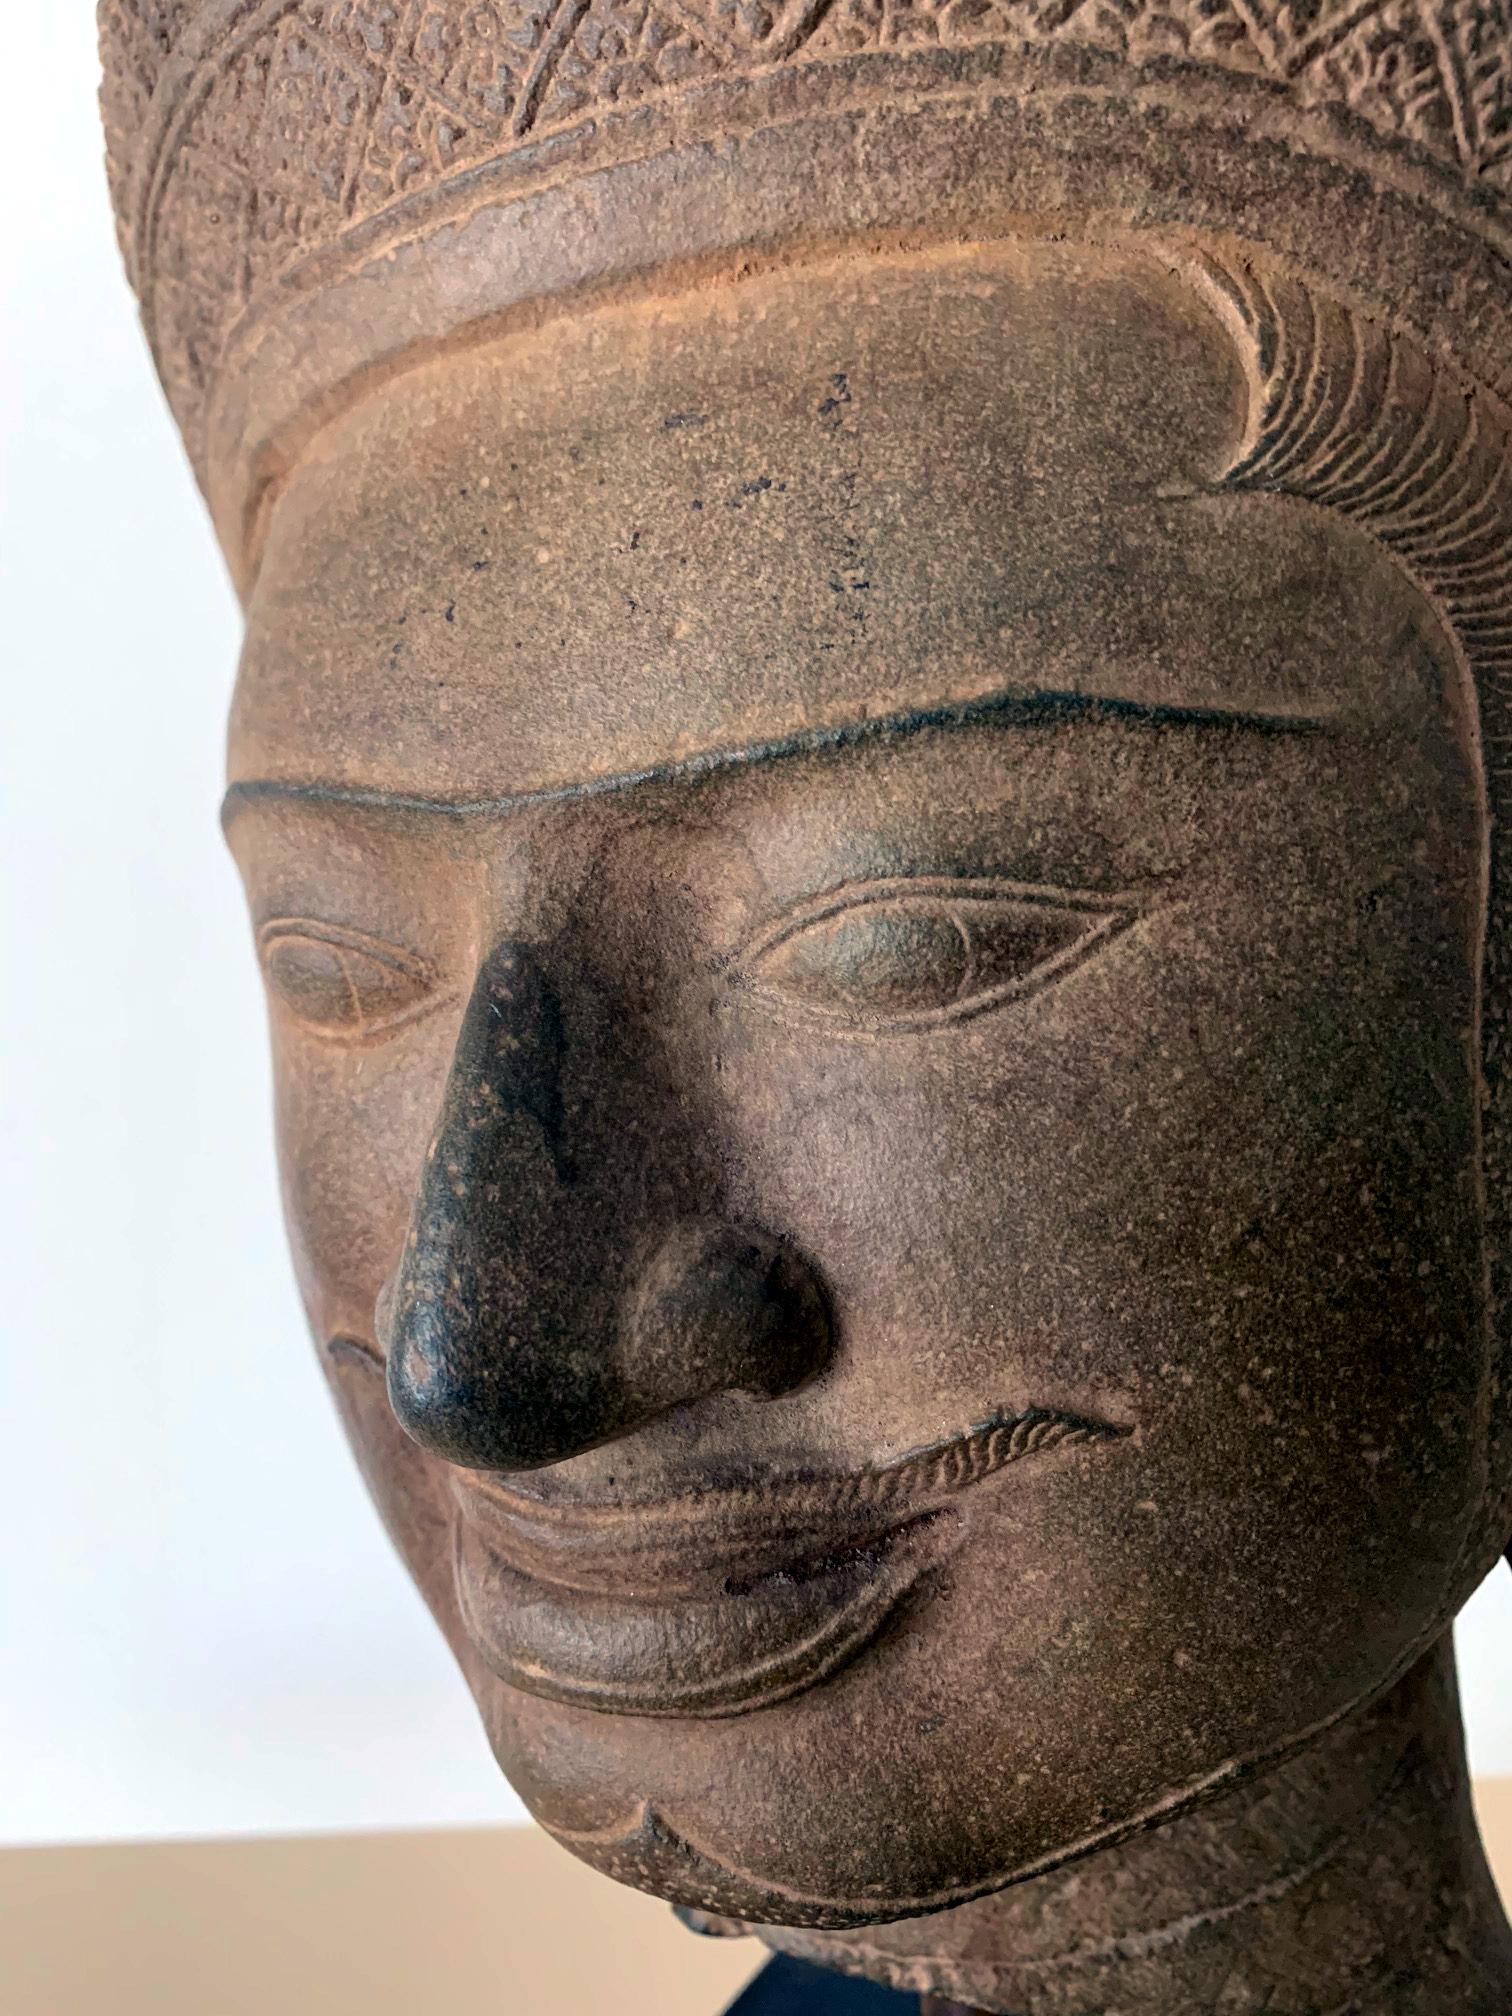 Khmer Sandstone Carving of Vishnu Cambodia 1